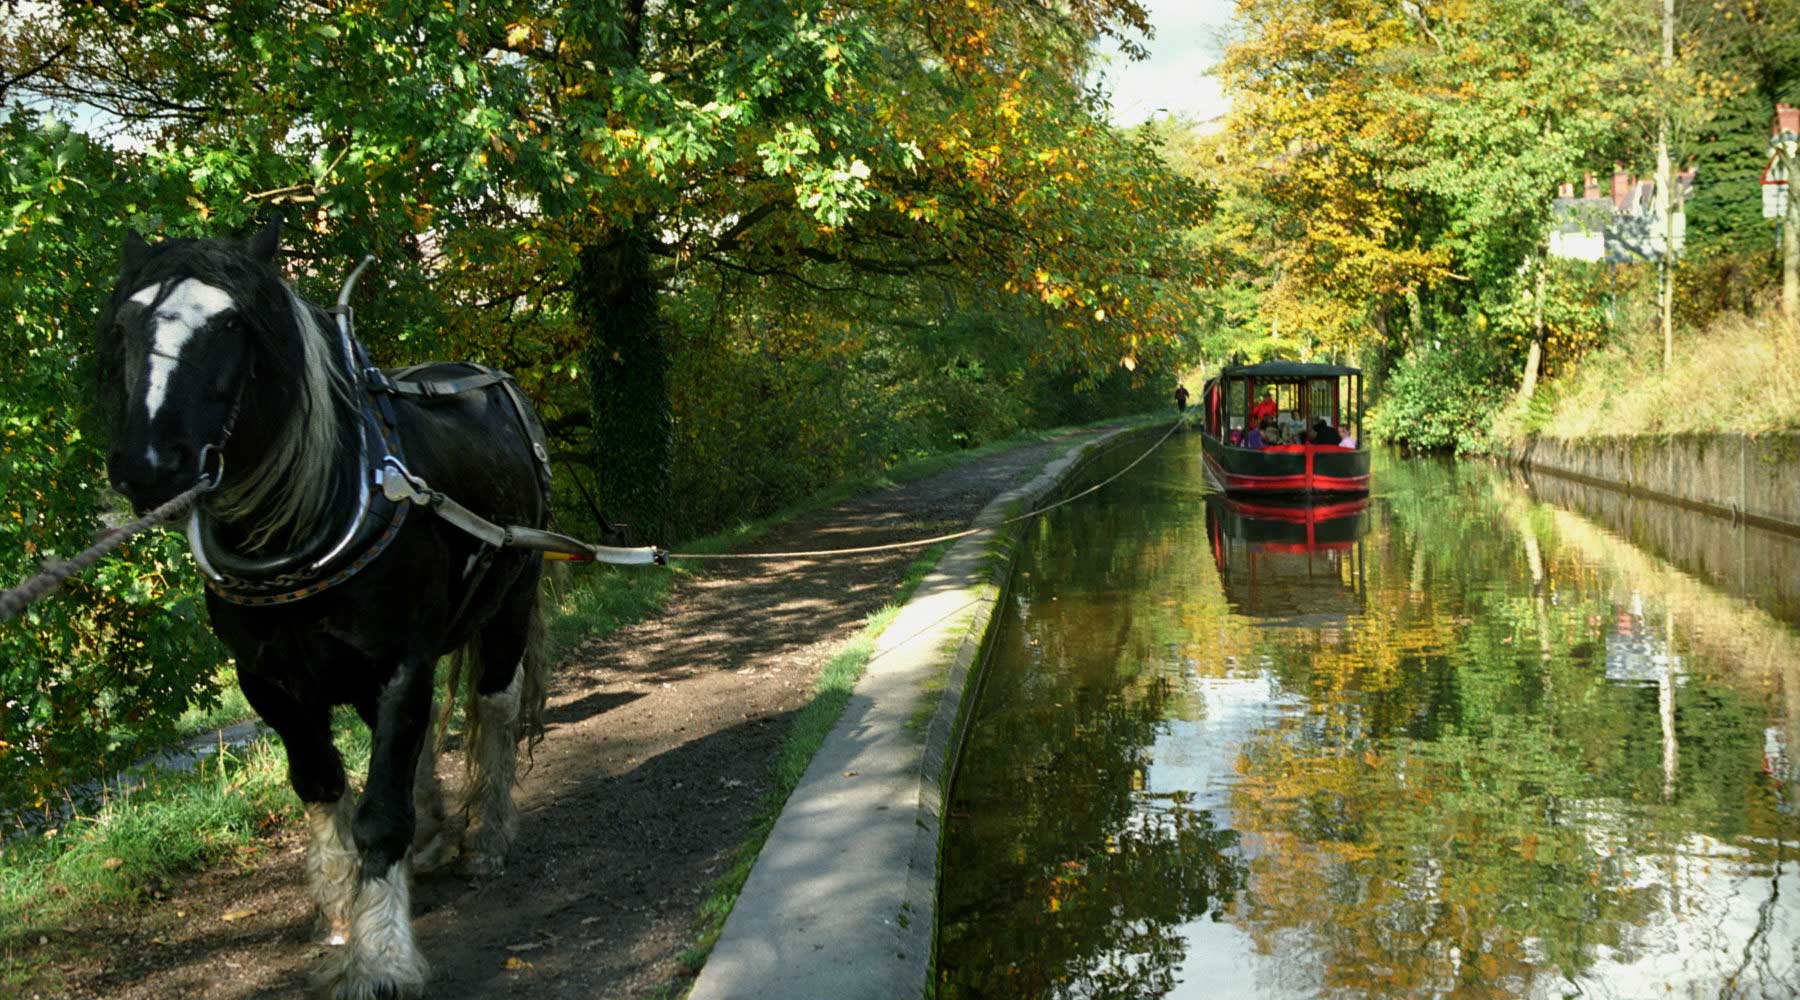 *horsedrawn narrowboat llangollen canal